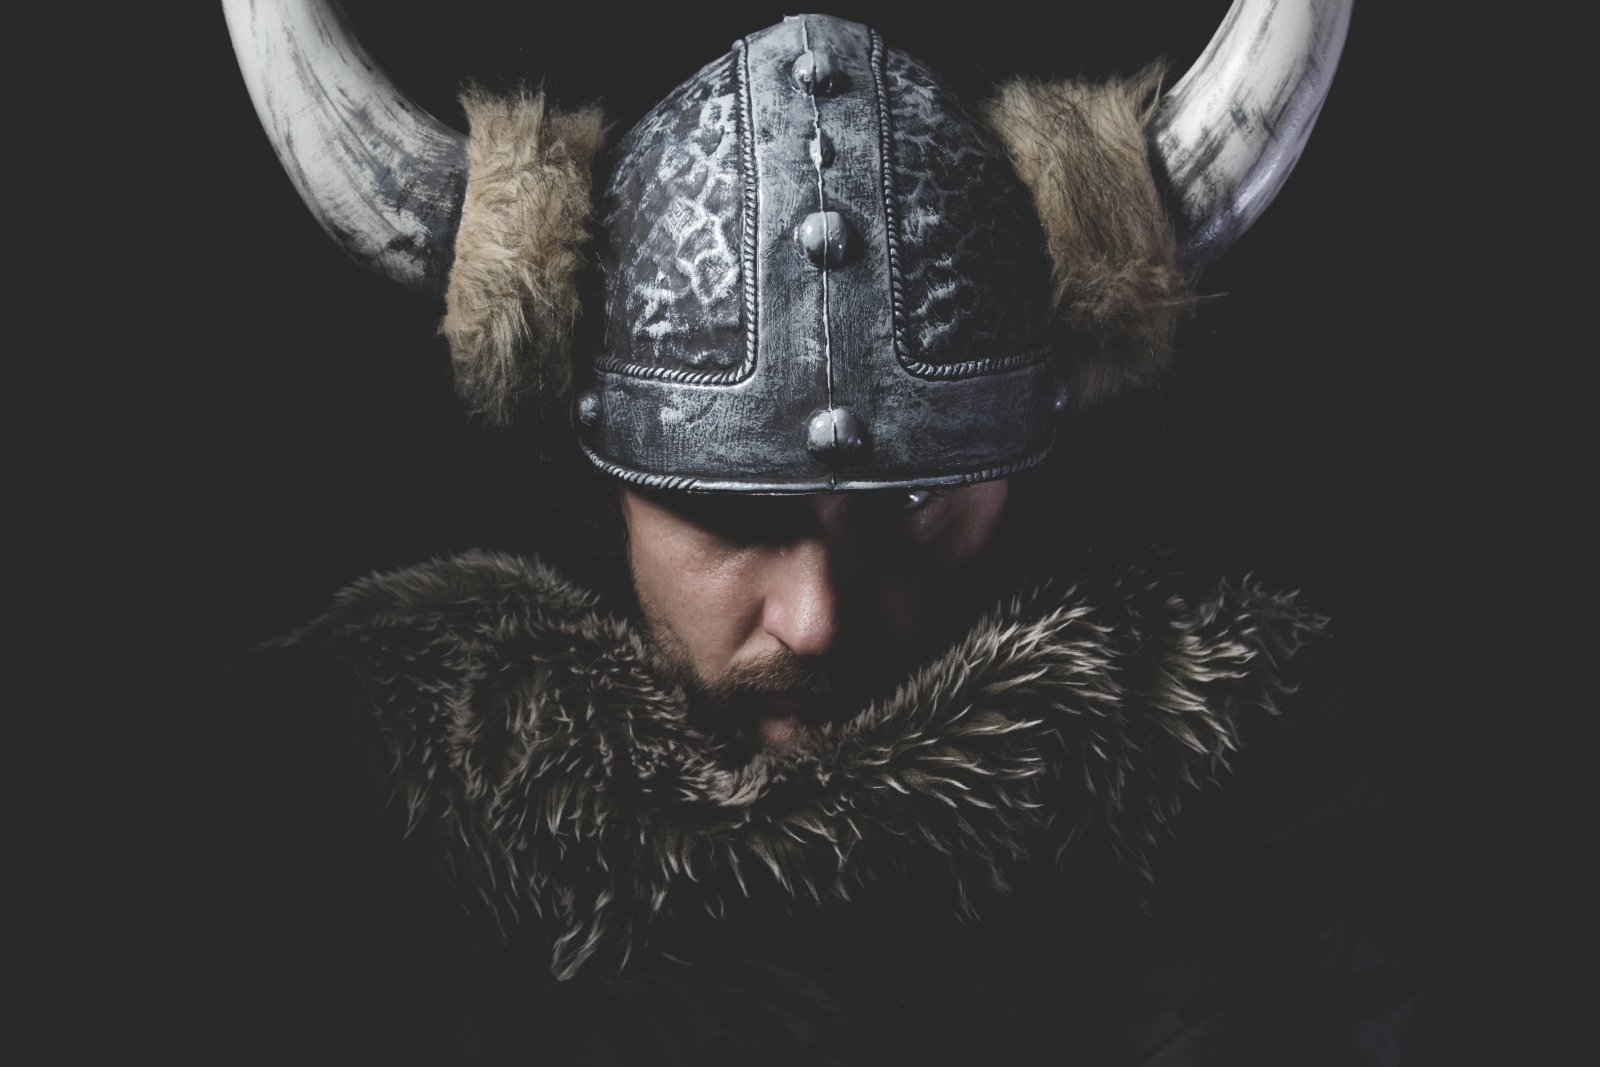 Rohatí Vikingové jsou mýtus. Helmy spojované se seveřany mají kořeny jinde  - Deník.cz